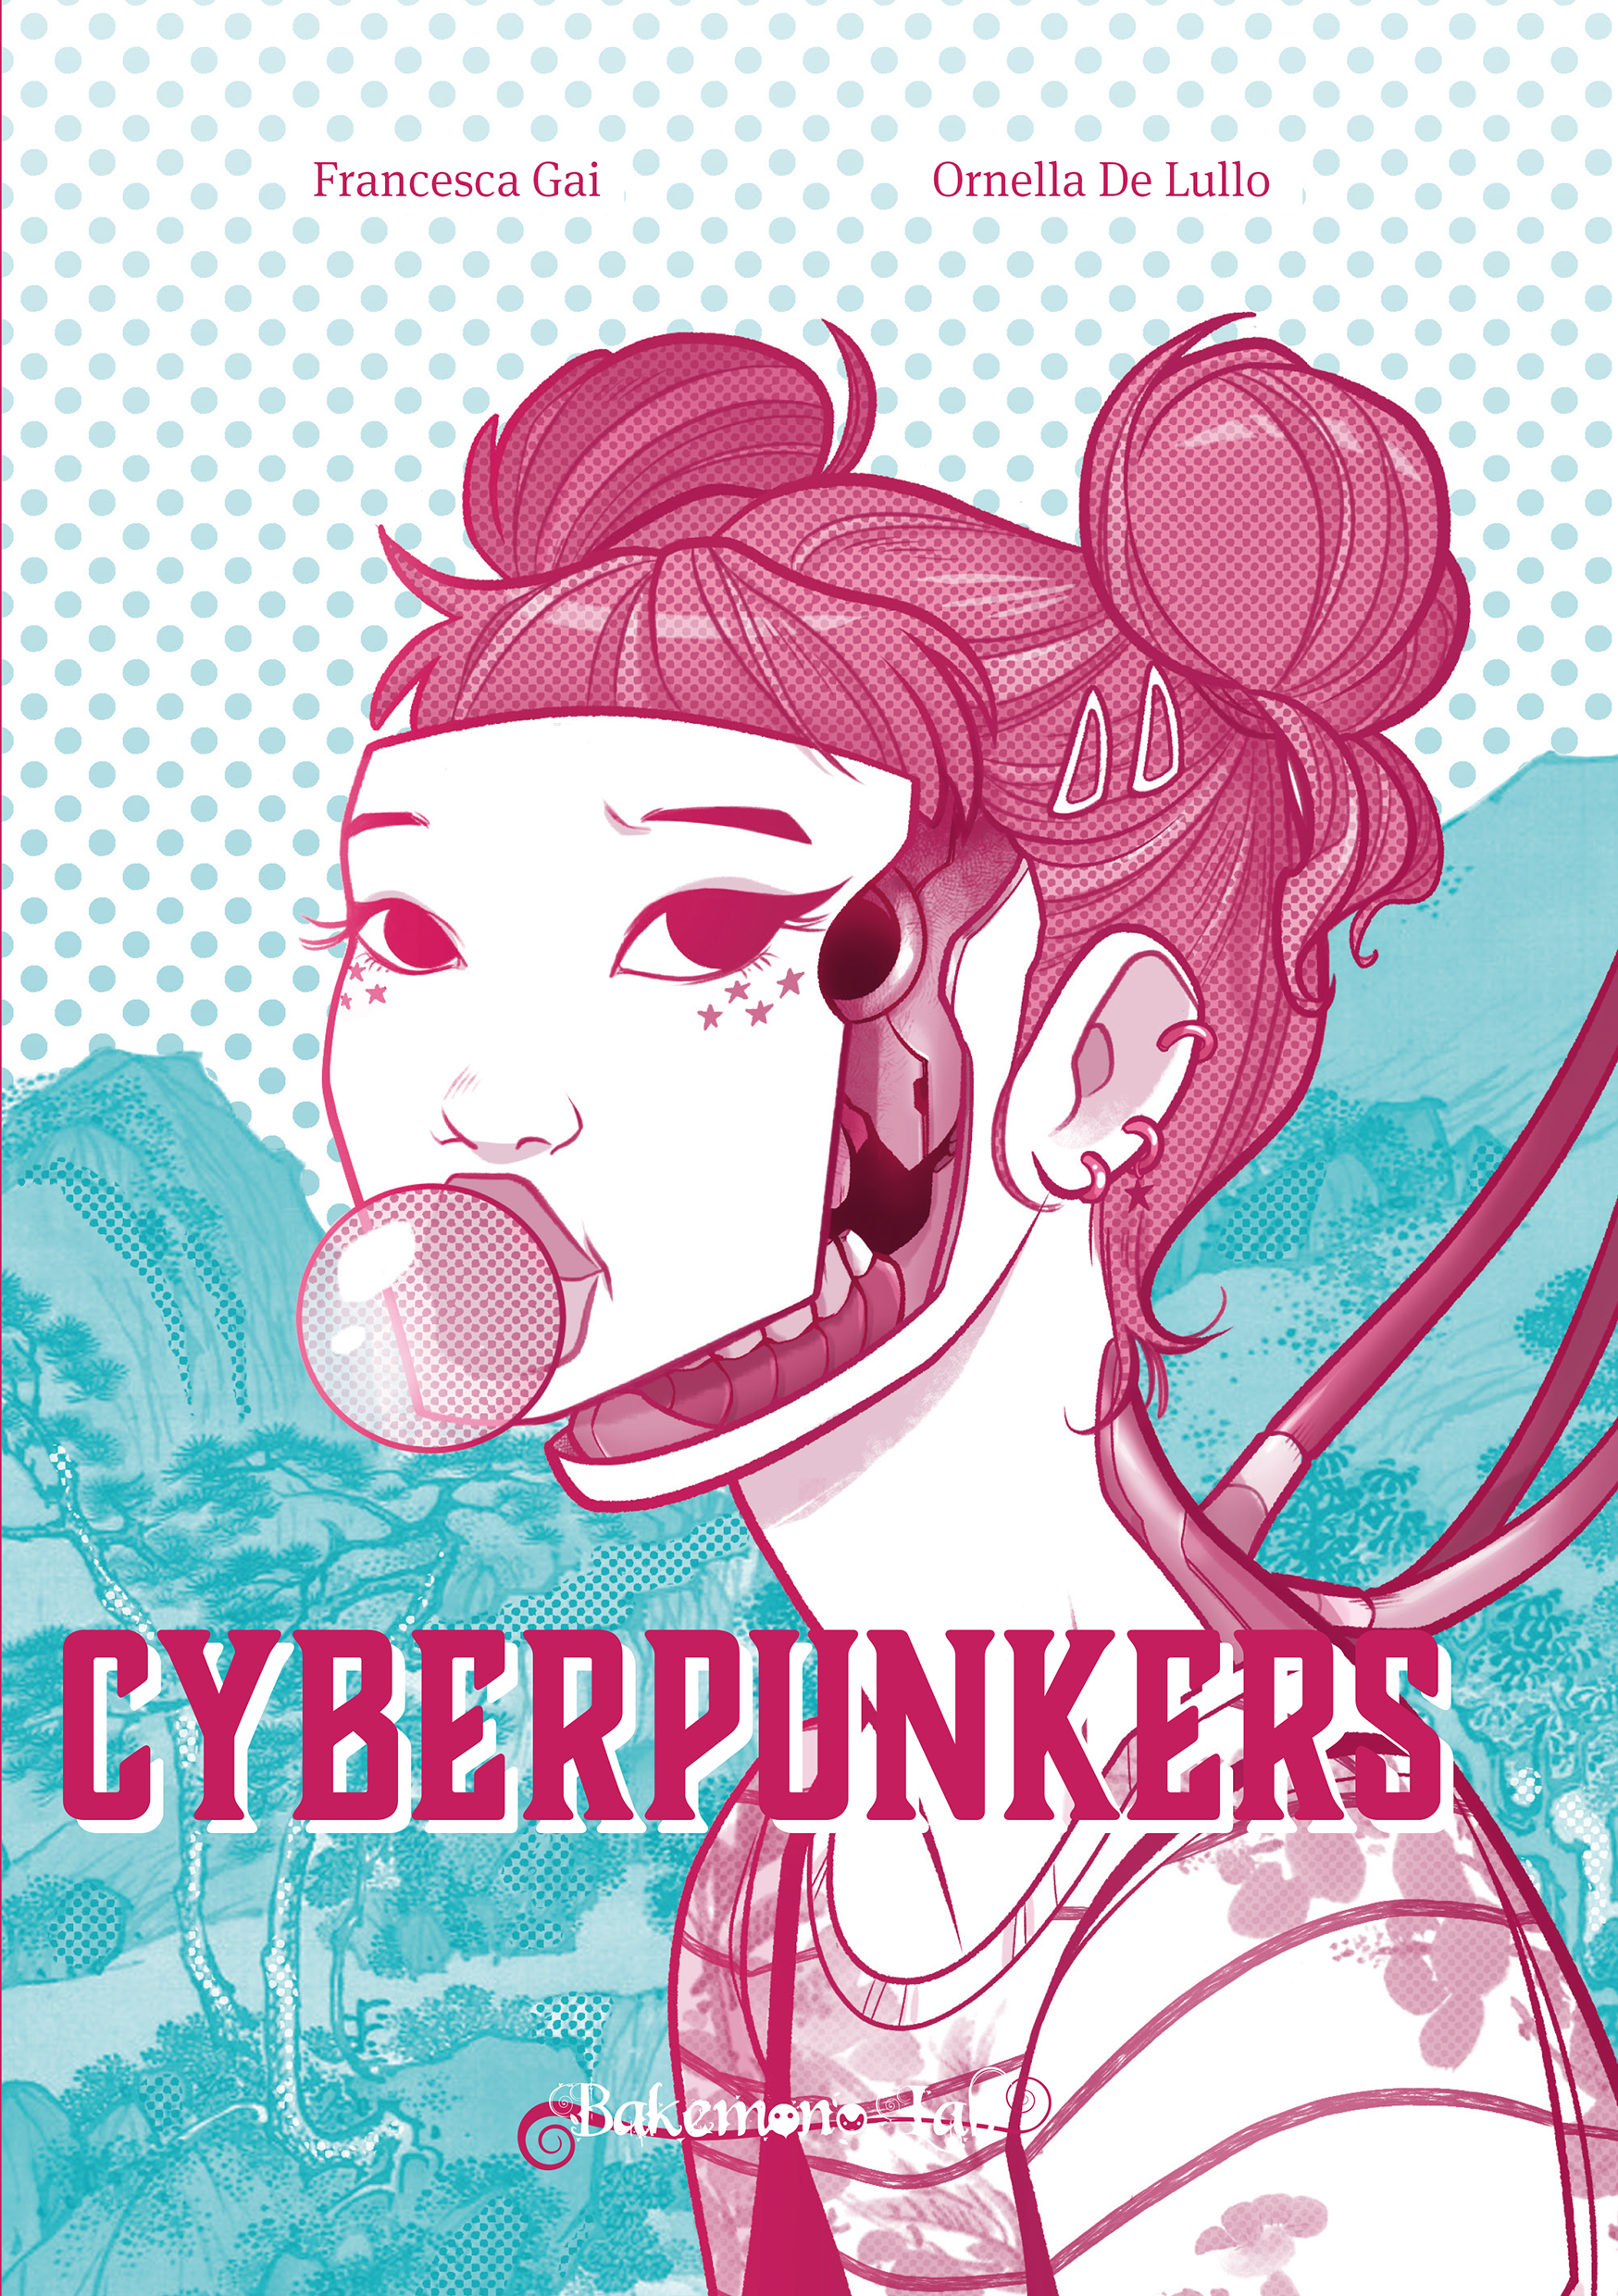 Cyberpunkers di Ornella De Lullo e Francesca Gai